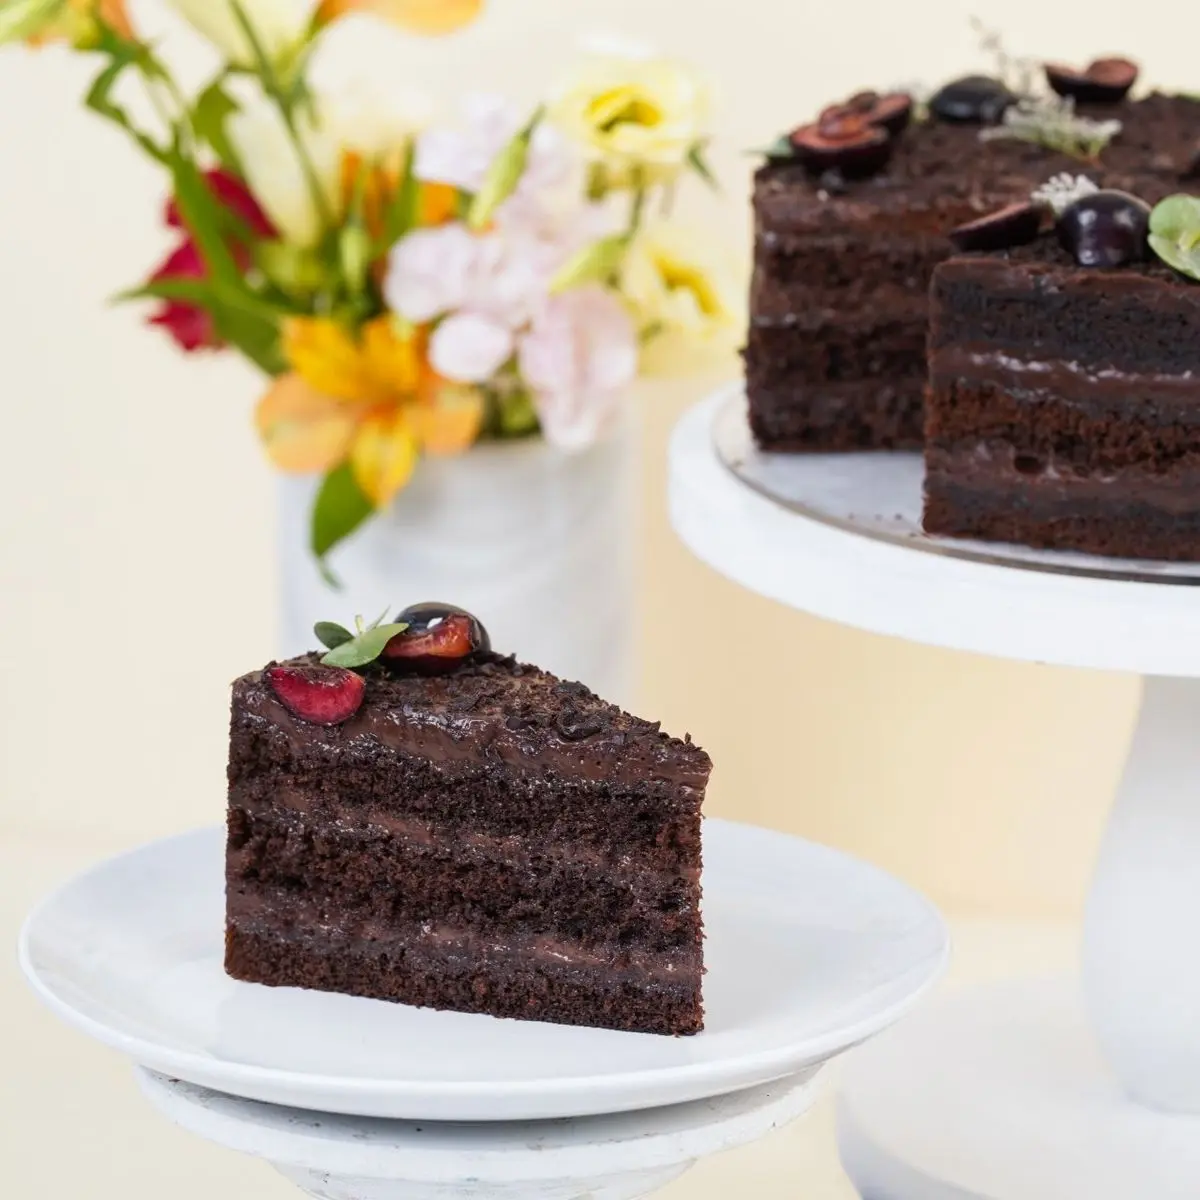 خودت توی خونه کیکت رو حرفه ای تزیین کن! | آموزش دیزاین کیک با شکلات آب شده +ویدئو